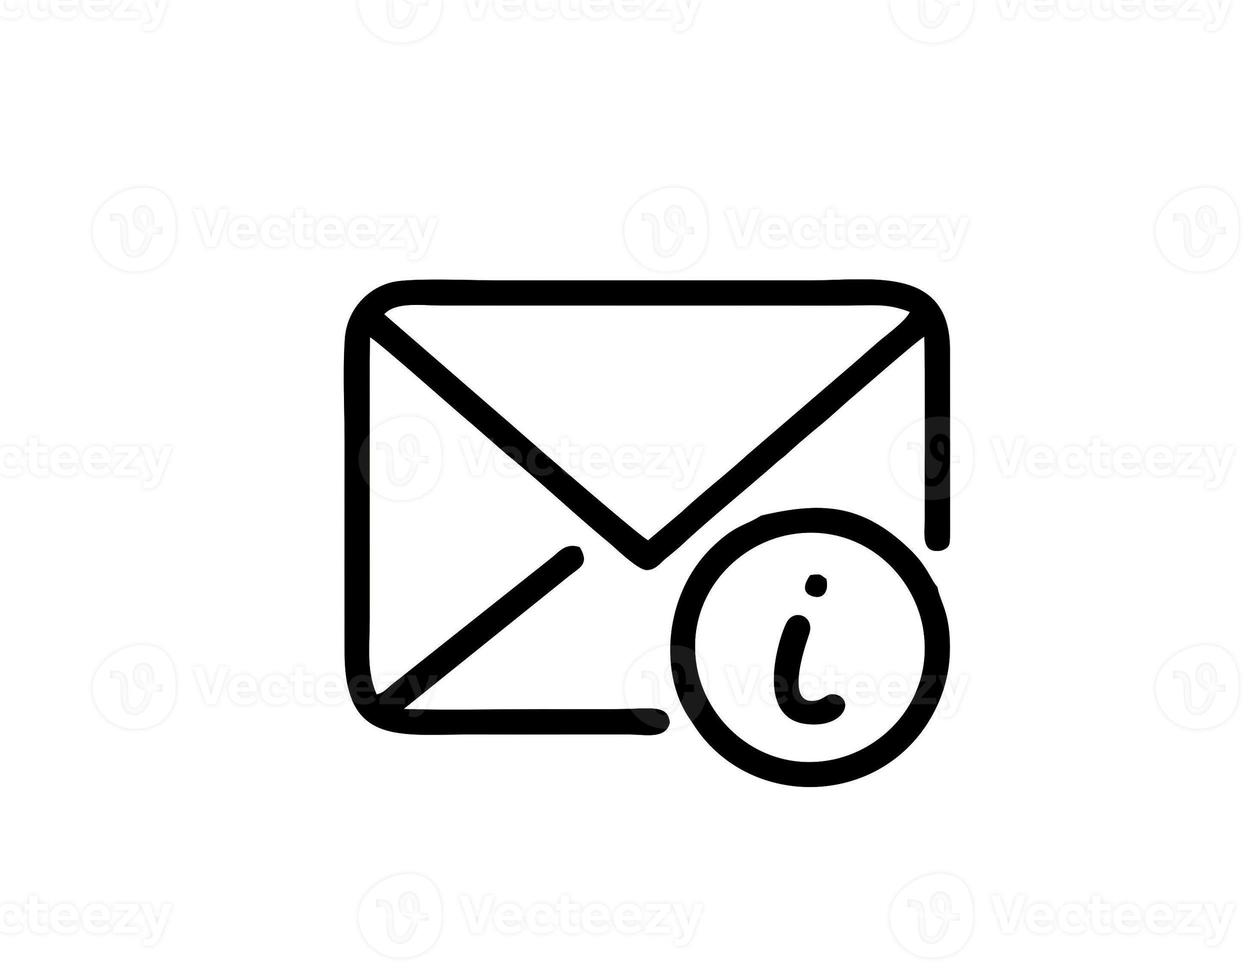 Umschlagsymbol in weißem Vektorbild, Abbildung des Umschlags in Schwarz auf weißem Hintergrund, ein Nachrichtendesign auf weißem Hintergrund foto